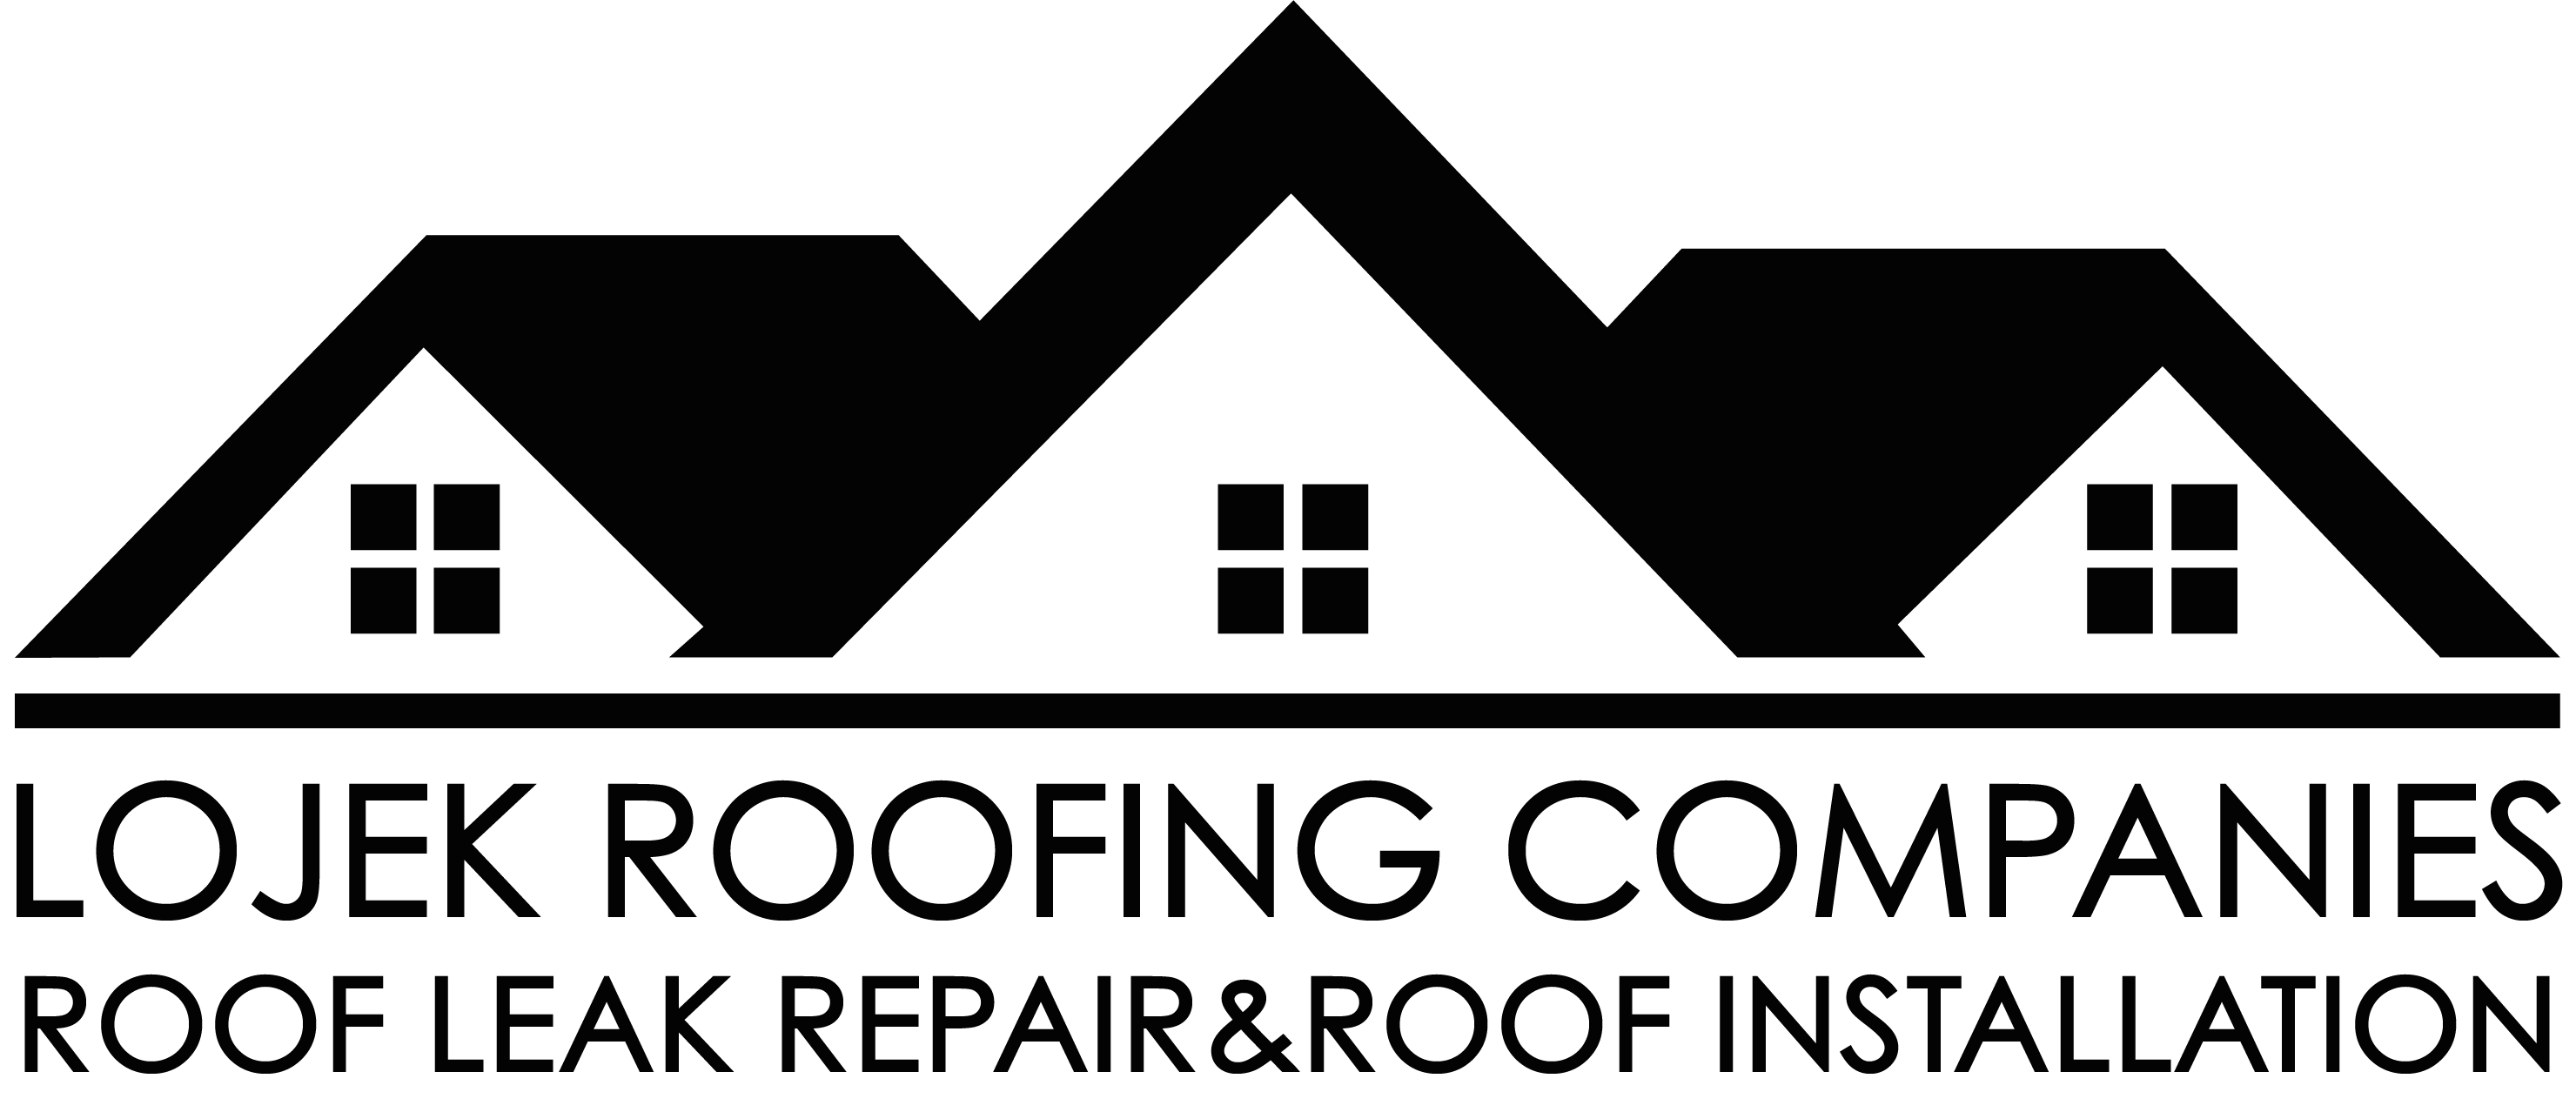 LJEK Roofing Contractors & Roof Repair Logo